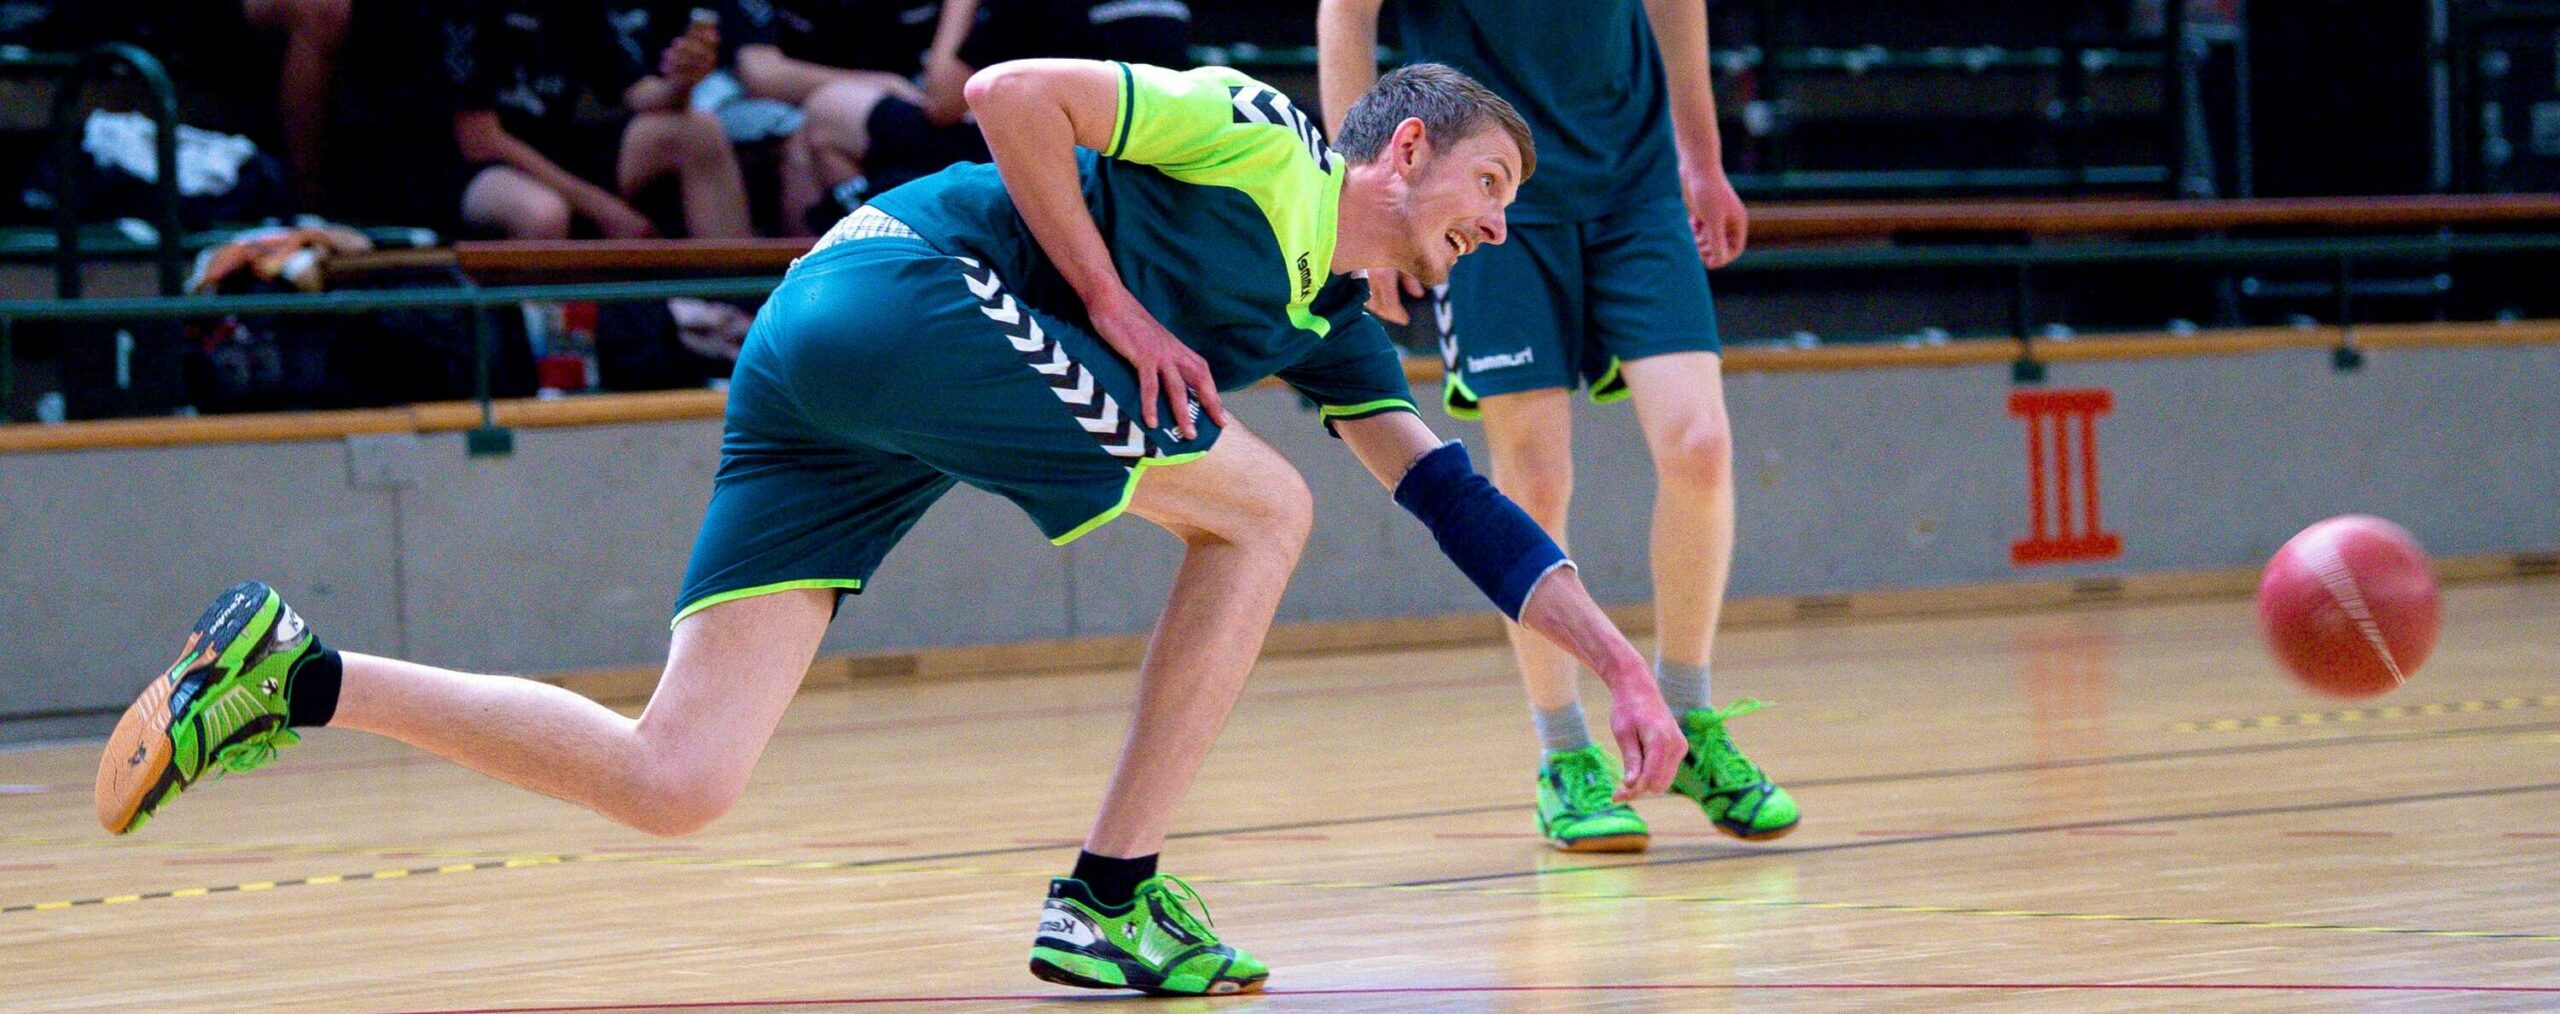 Ein Prellballspieler im grün-blauen Trikot im Spieleinsatz, hechtet nach dem Ball.